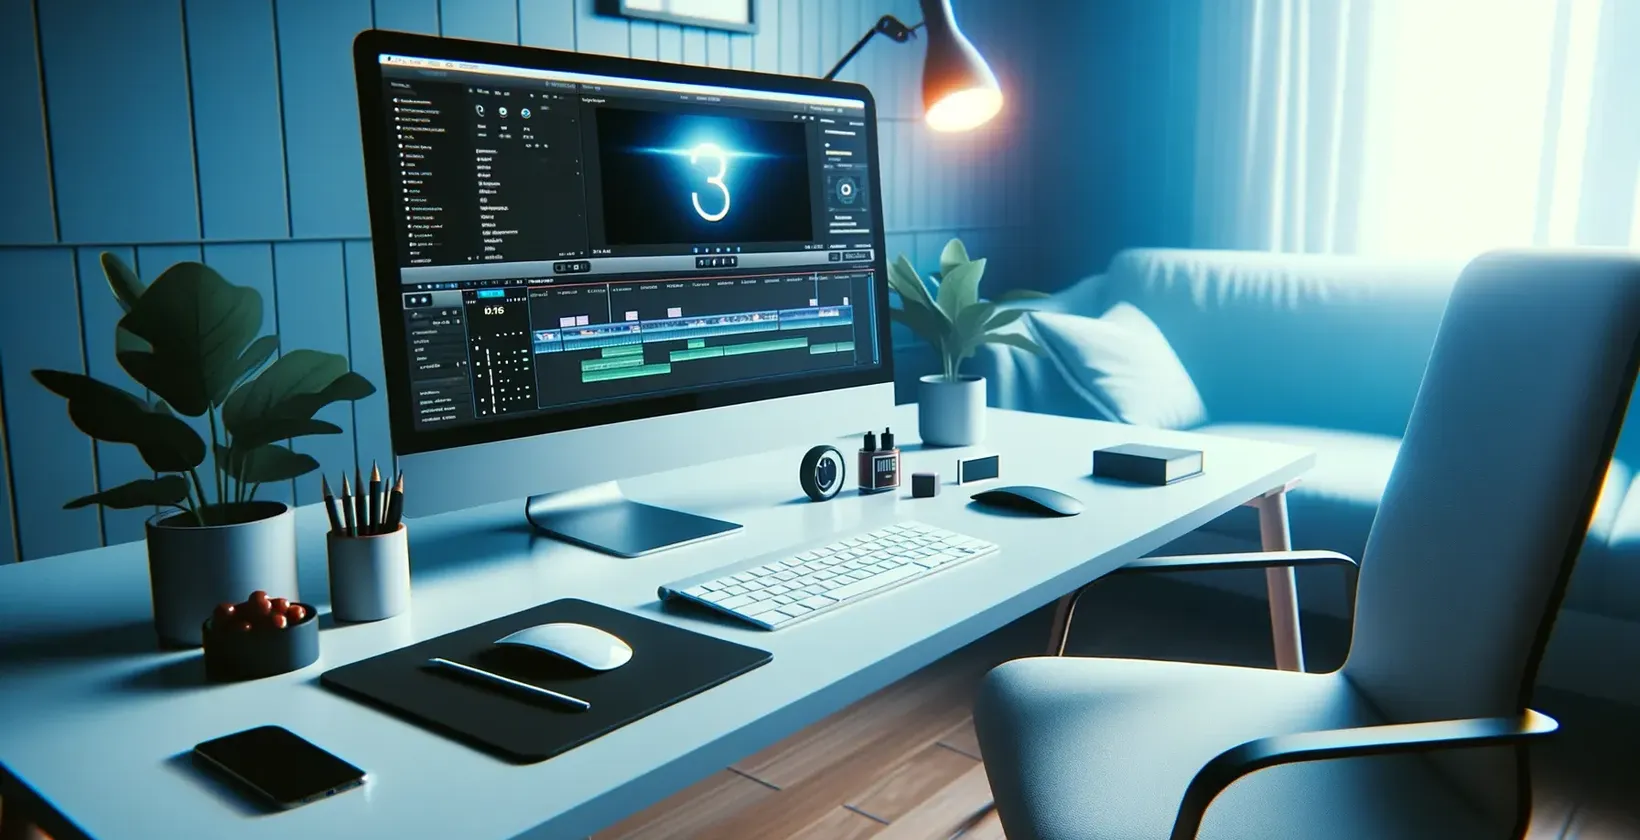 Modře podsvícená editační stanice; obrazovka zobrazuje 3D zvukové vlny a multimediální symboly